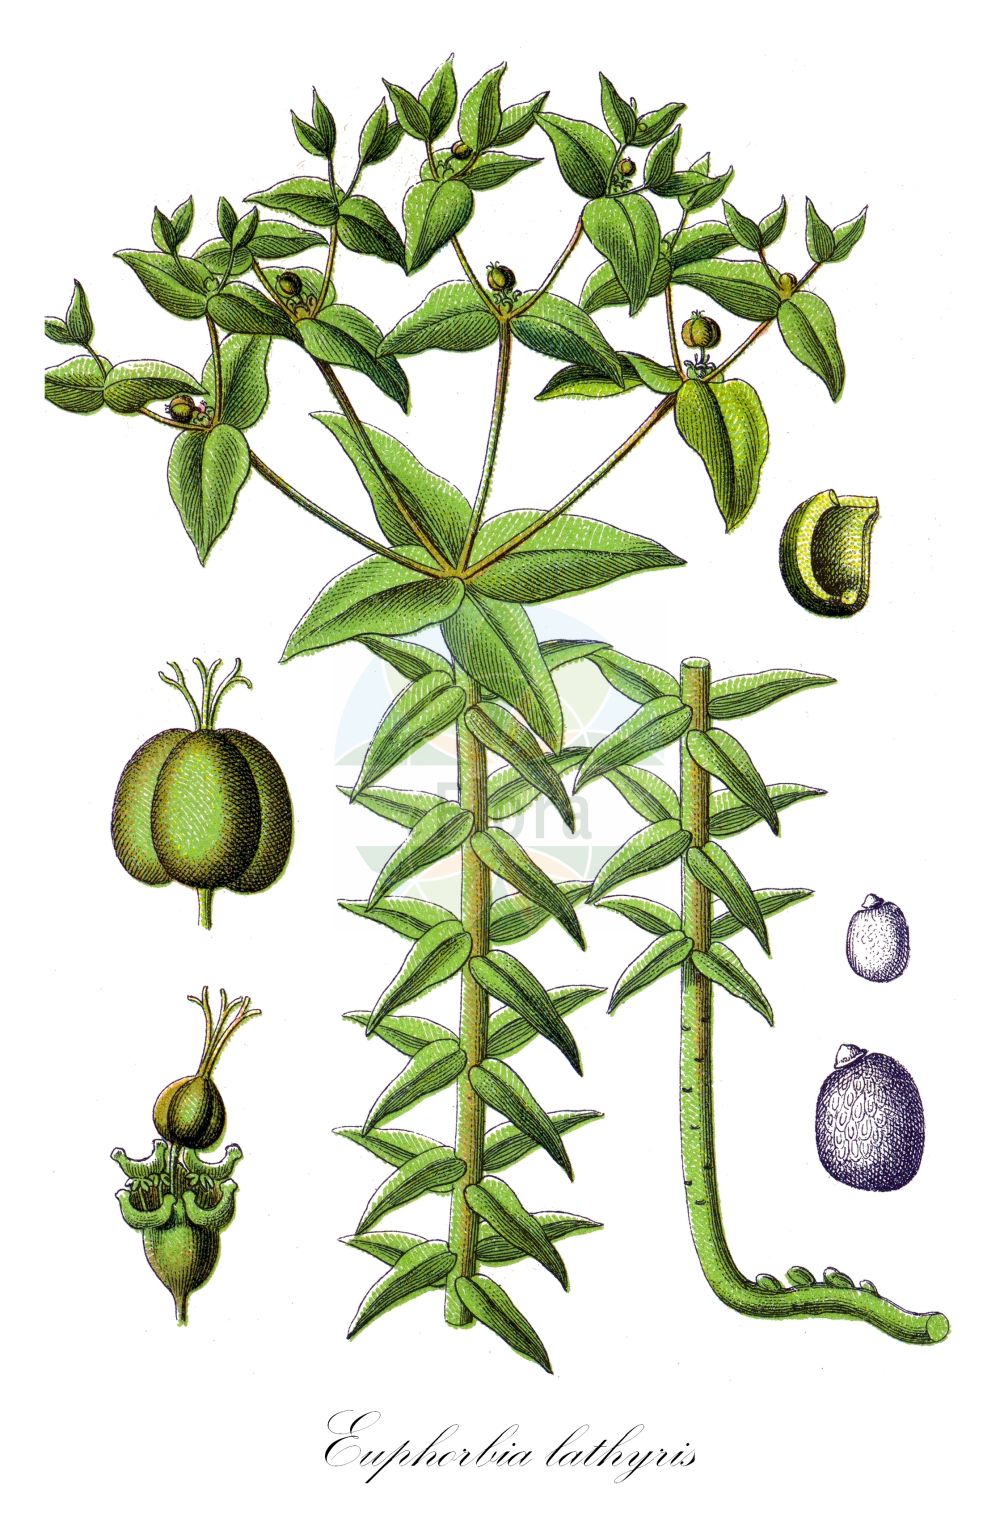 Historische Abbildung von Euphorbia lathyris (Kreuzbblättrige Wolfsmilch - Caper Spurge). ---- Historical Drawing of Euphorbia lathyris (Kreuzbblättrige Wolfsmilch - Caper Spurge).(Euphorbia lathyris,Kreuzbblättrige Wolfsmilch,Caper Spurge,Epurga lathyris,Euphorbia decussata,Euphorbia lathyris,Euphorbia spongiosa,Euphorbion lathyrum,Galarhoeus decussatus,Galarhoeus lathyris,Keraselma lathyris,Tithymalus cataputia,Tithymalus lathyris,Kreuzbblaettrige Wolfsmilch,Maulwurfskraut,Spring-Wolfsmilch,Caper Spurge,Mole Plant,Paper Spurge,Euphorbia,Wolfsmilch,Spurge,Euphorbiaceae,Wolfsmilchgewächse,Spurge family,Sturm (1796f))